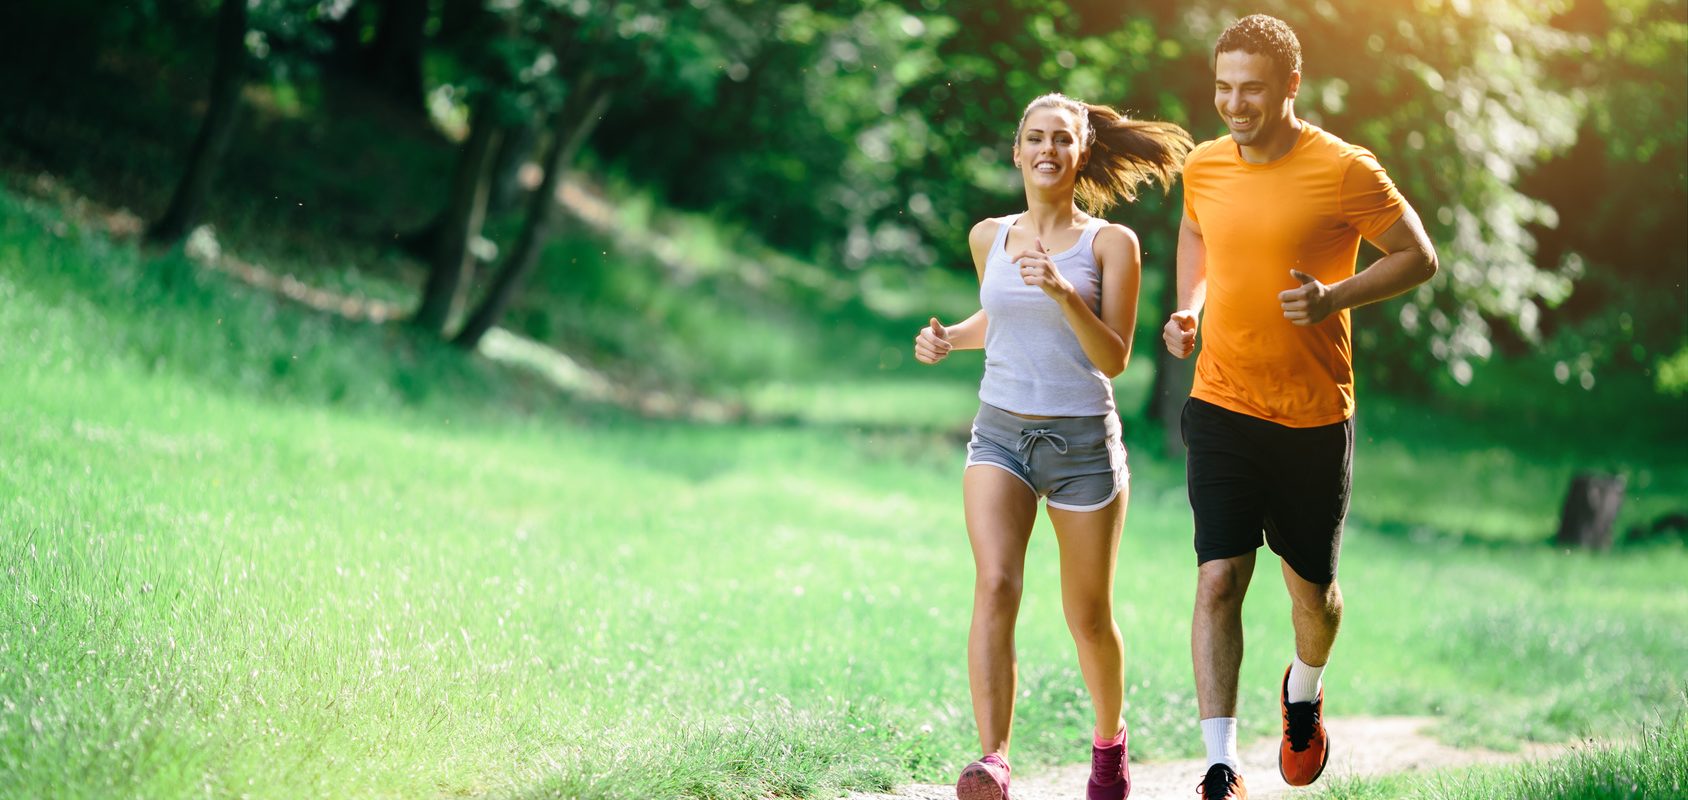 Bieganie w upale - jak bezpiecznie biegać w upalne dni? Kobieta i mężczyzna uprawiają jogging w parku latem.